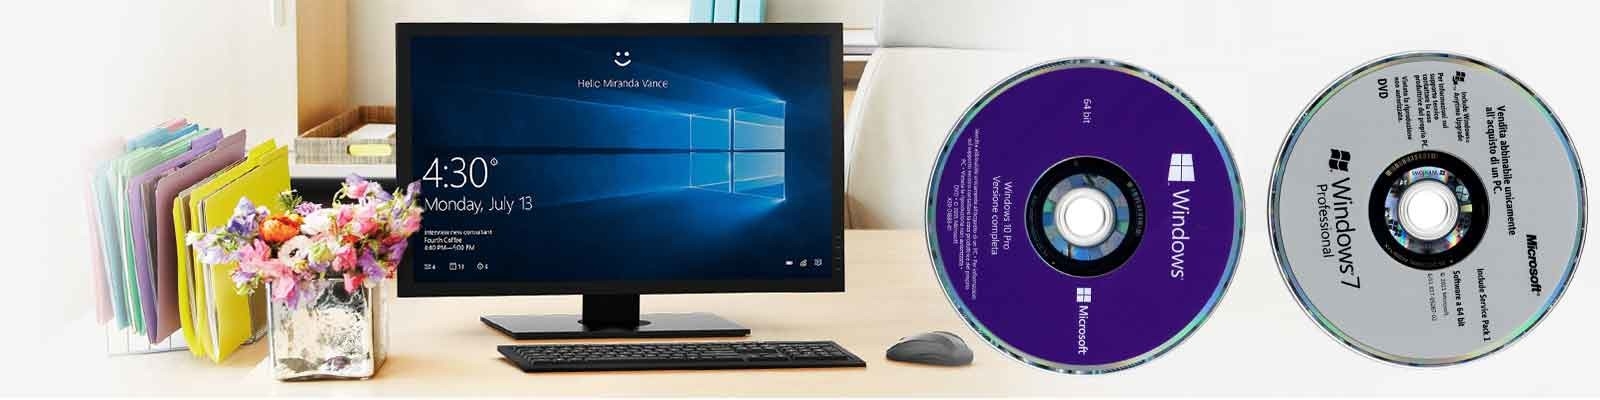 Porcellana il la cosa migliore Chiave della licenza di Microsoft Windows 8,1 sulle vendite